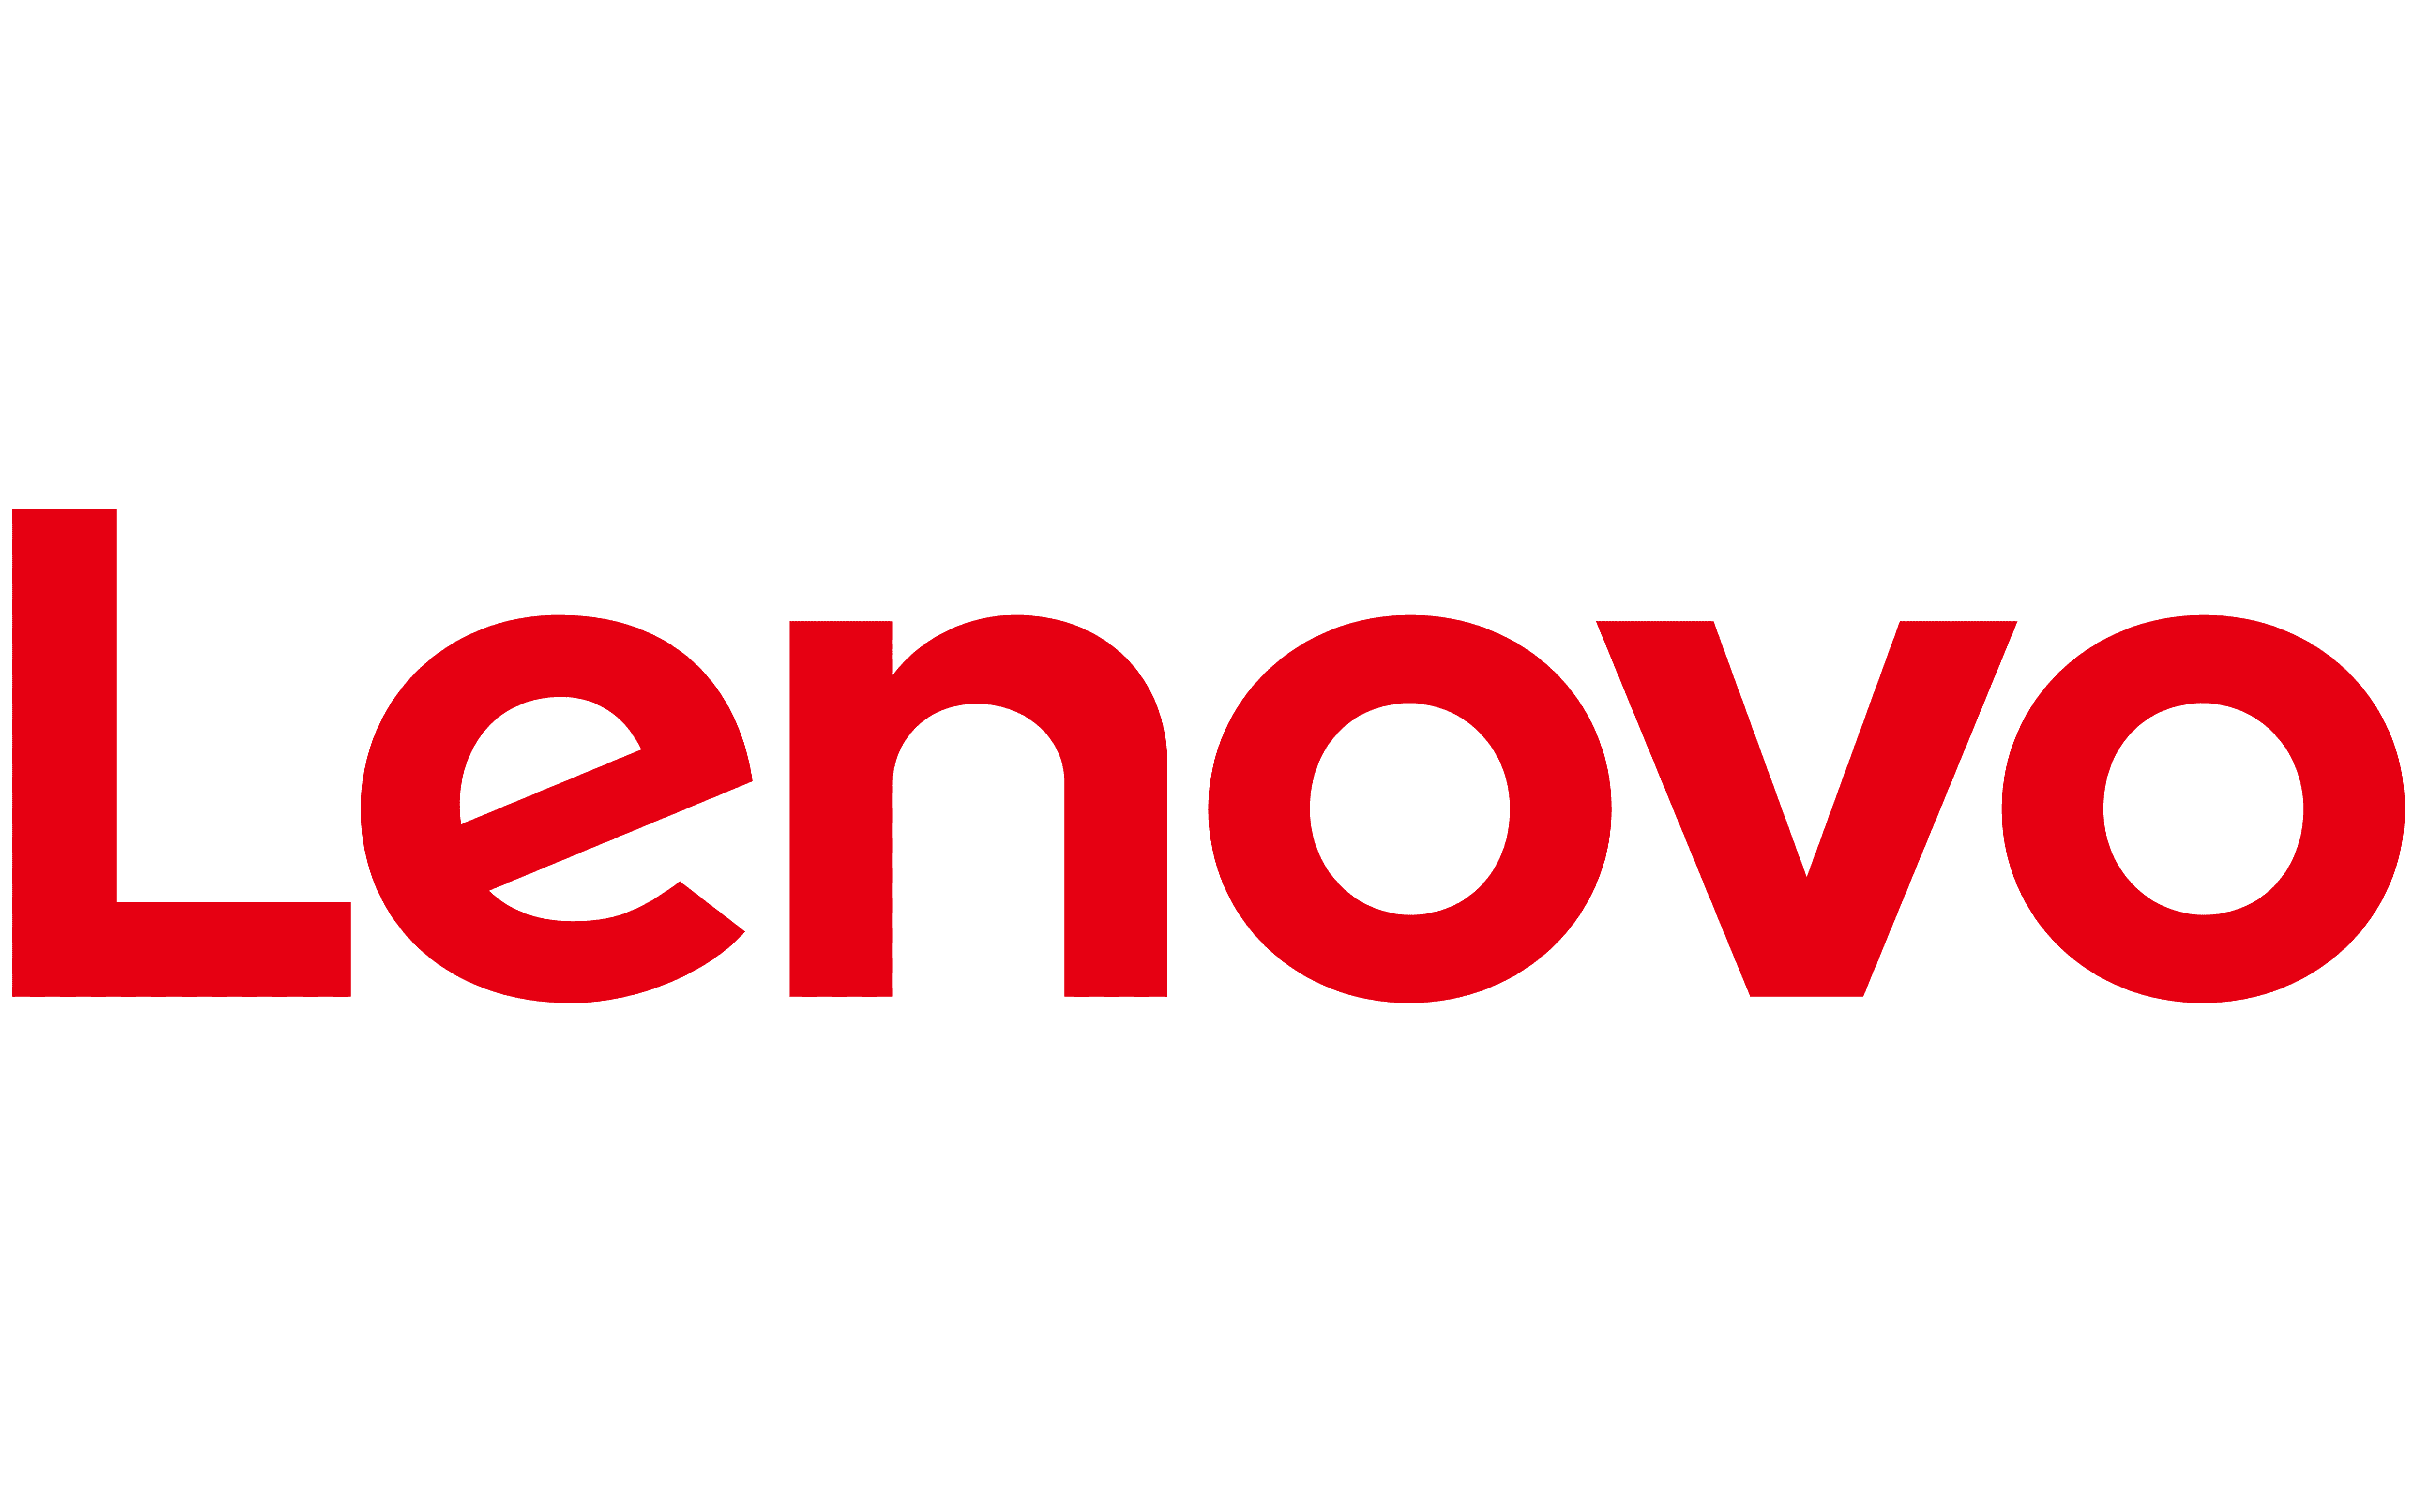 Lenovo-Logo-1